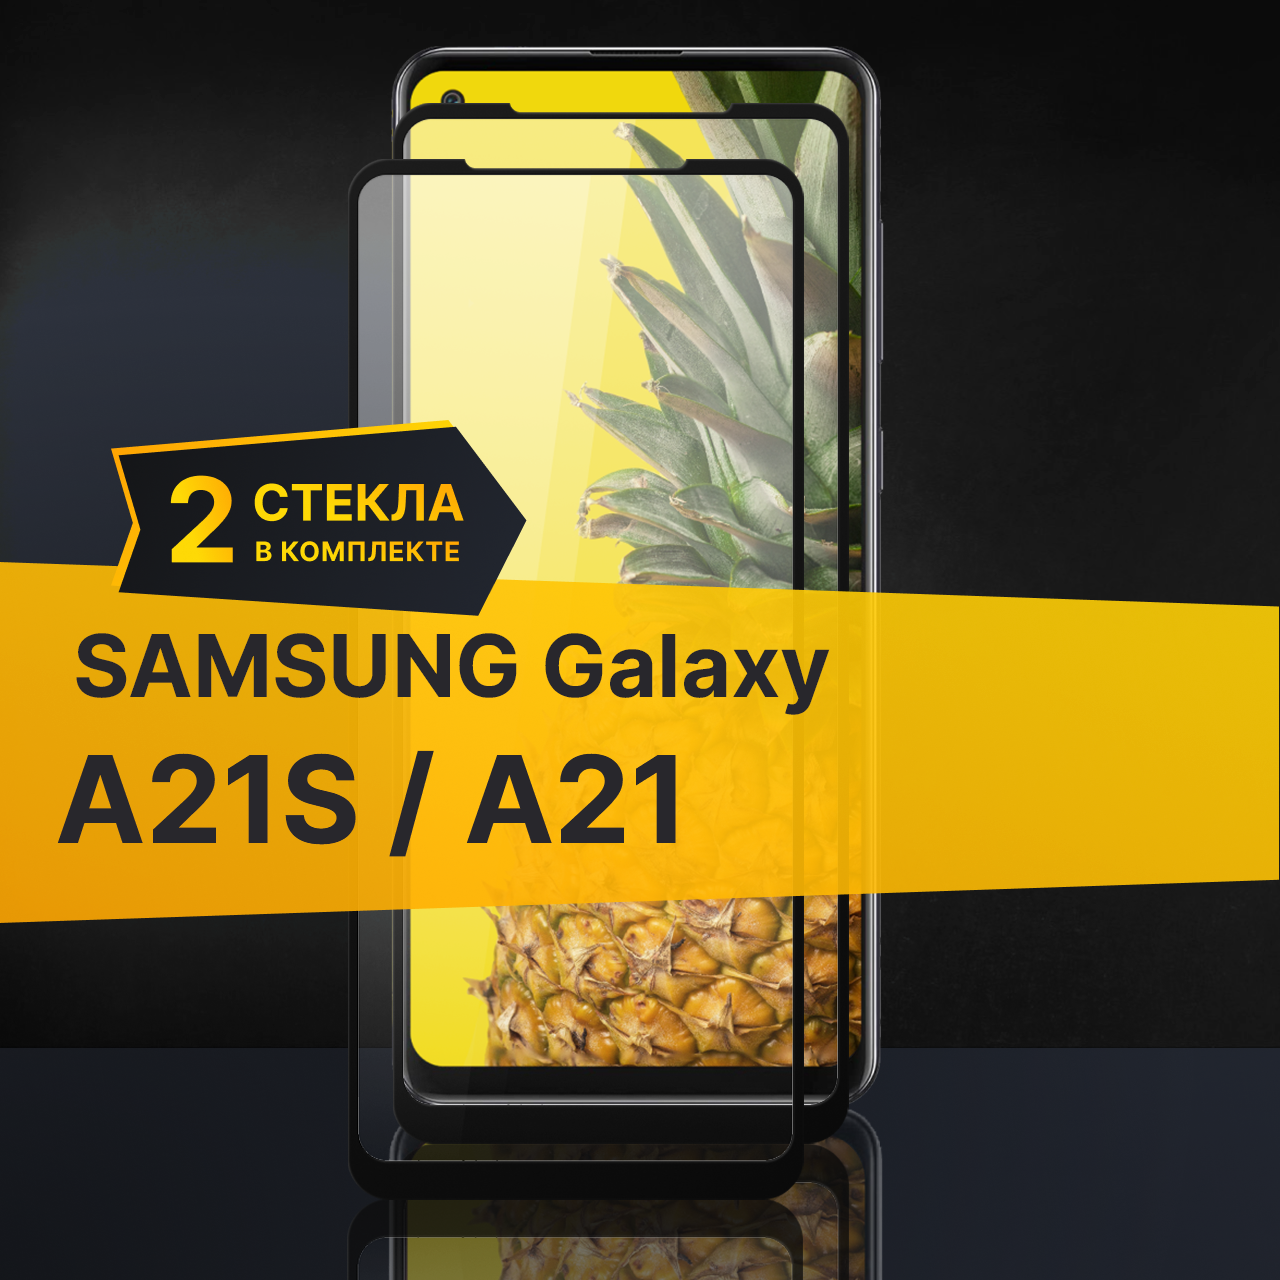 Комплект 2 шт. Противоударное защитное стекло для телефона Samsung Galaxy A21S и A21 / Полноклеевое 3D стекло с олеофобным покрытием на смартфон Самсунг Галакси А21С и А21 / С черной рамкой